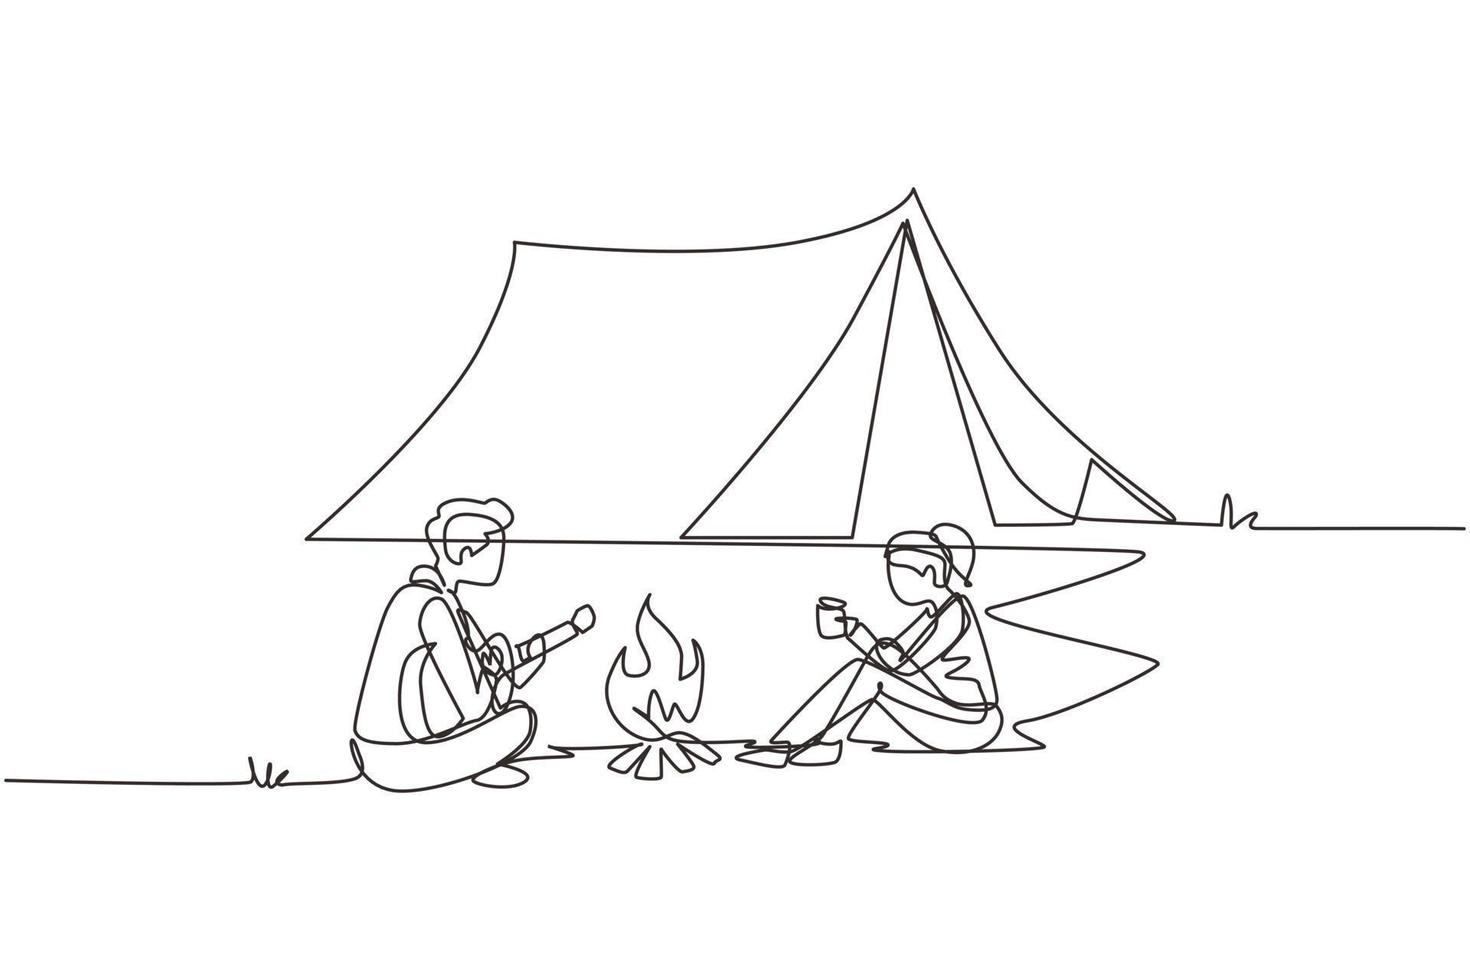 coppia di campeggio di disegno a linea continua singola intorno a tende da falò. uomo che suona la chitarra e donna che beve tè caldo scaldandosi vicino al falò seduto a terra. illustrazione vettoriale di un disegno di linea